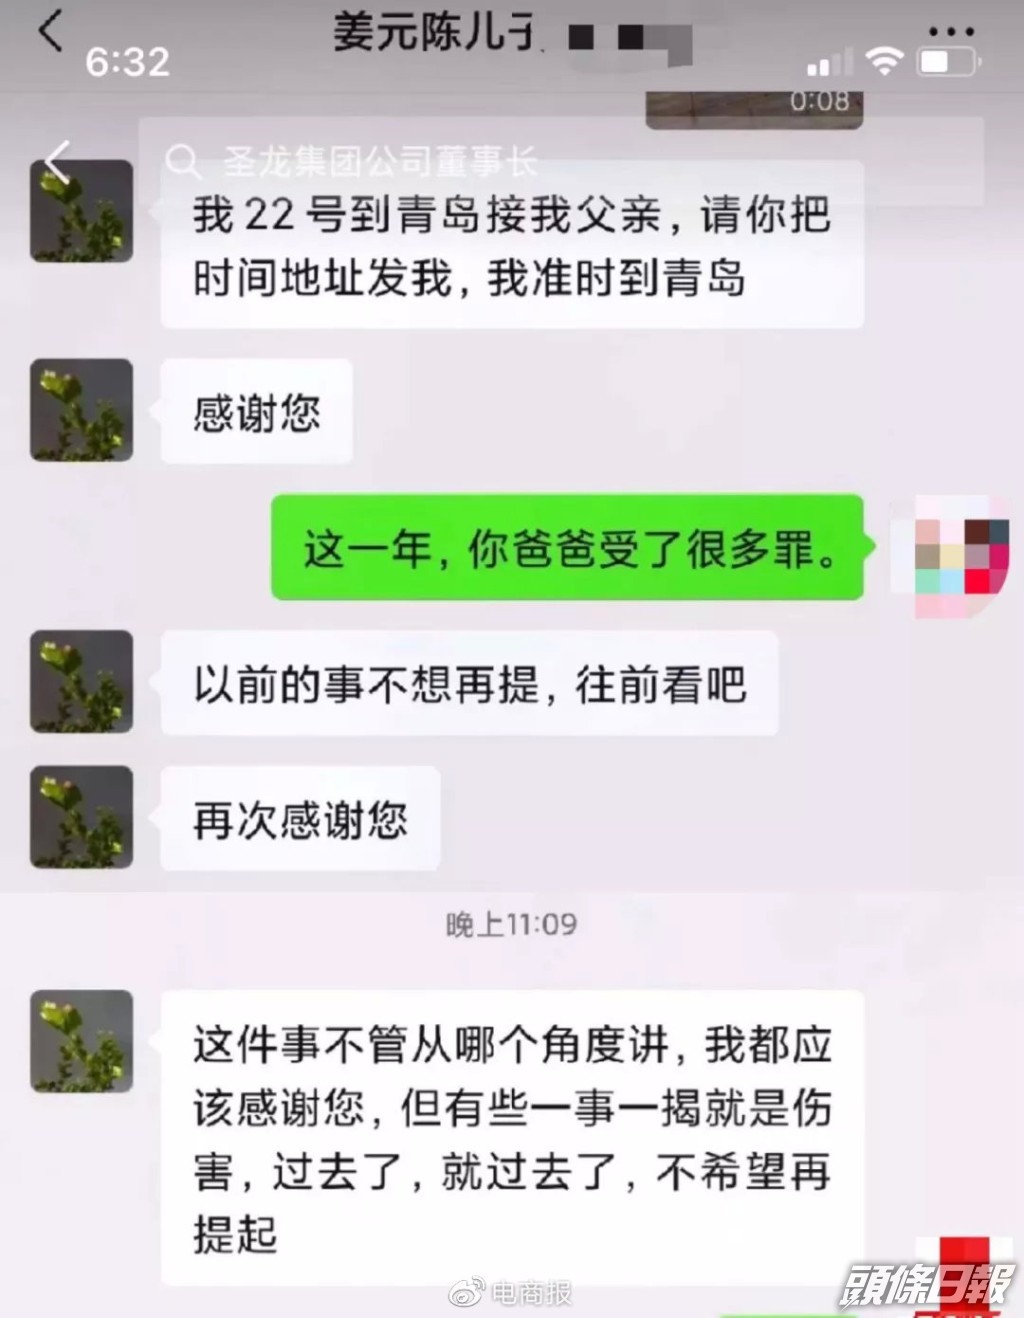 姜元陳兒子曾向義工直言「過往的傷痛不願再提」，婉拒接回姜元陳的請求。互聯網圖片